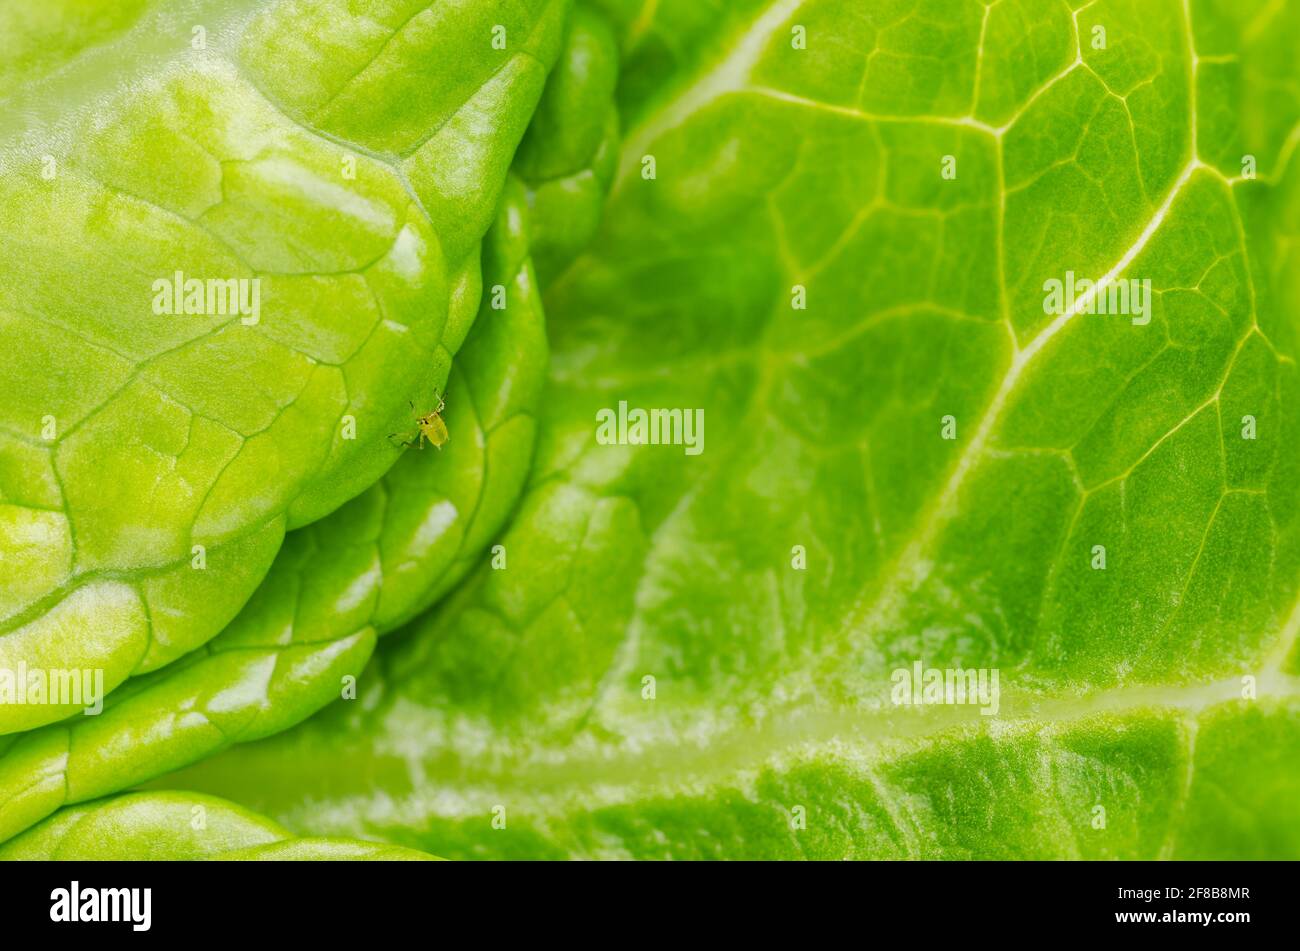 Laus auf grünem Salatblatt Pflanzen. Grüne Blattlaus, saftsaugend auf frischem Romainsalat. Grünfliege, Insekt der Aphidoidea-Familie. Stockfoto